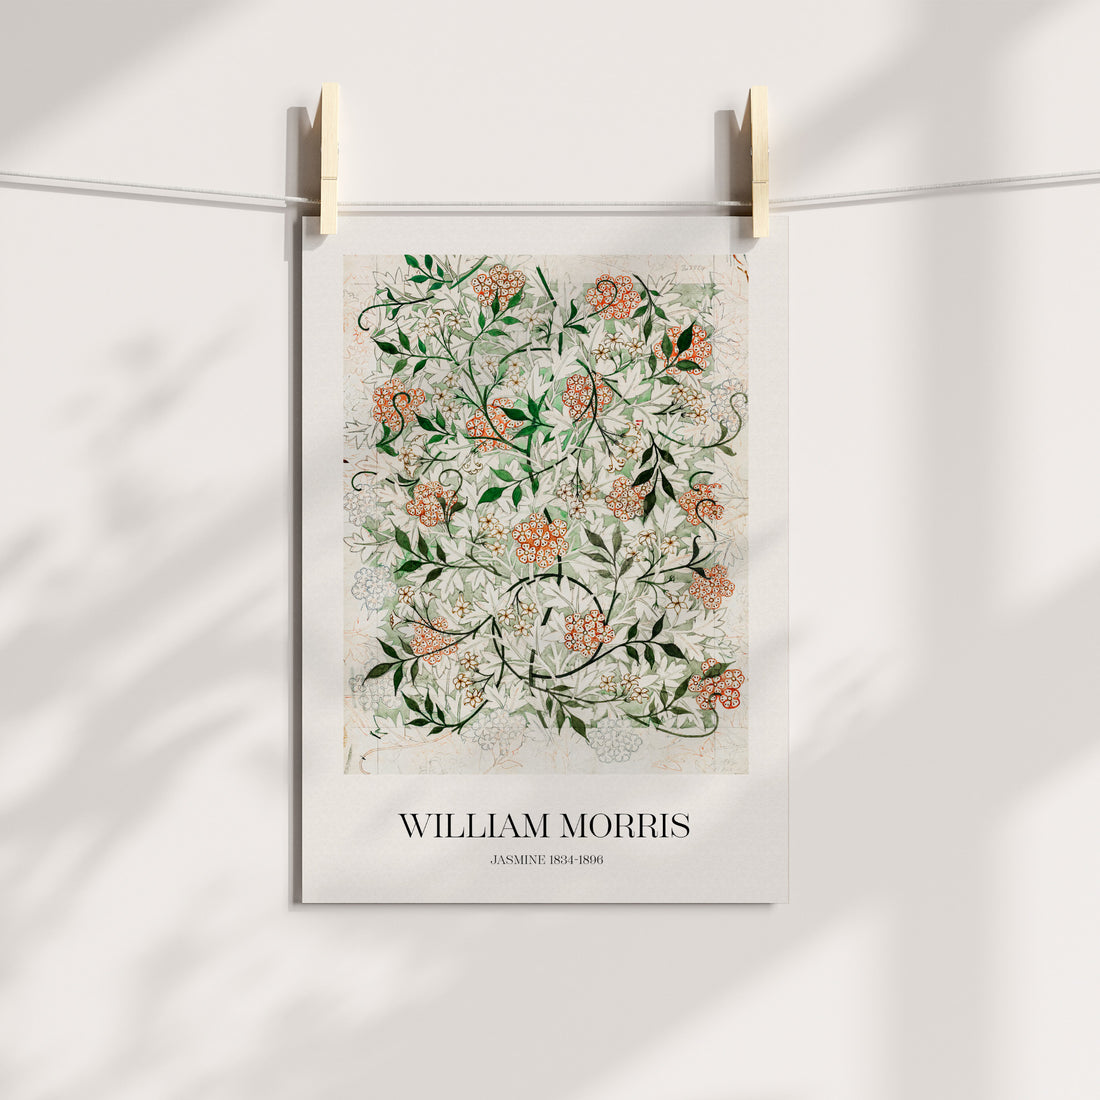 William Morris Jasmine Sketch Gallery Printable Art